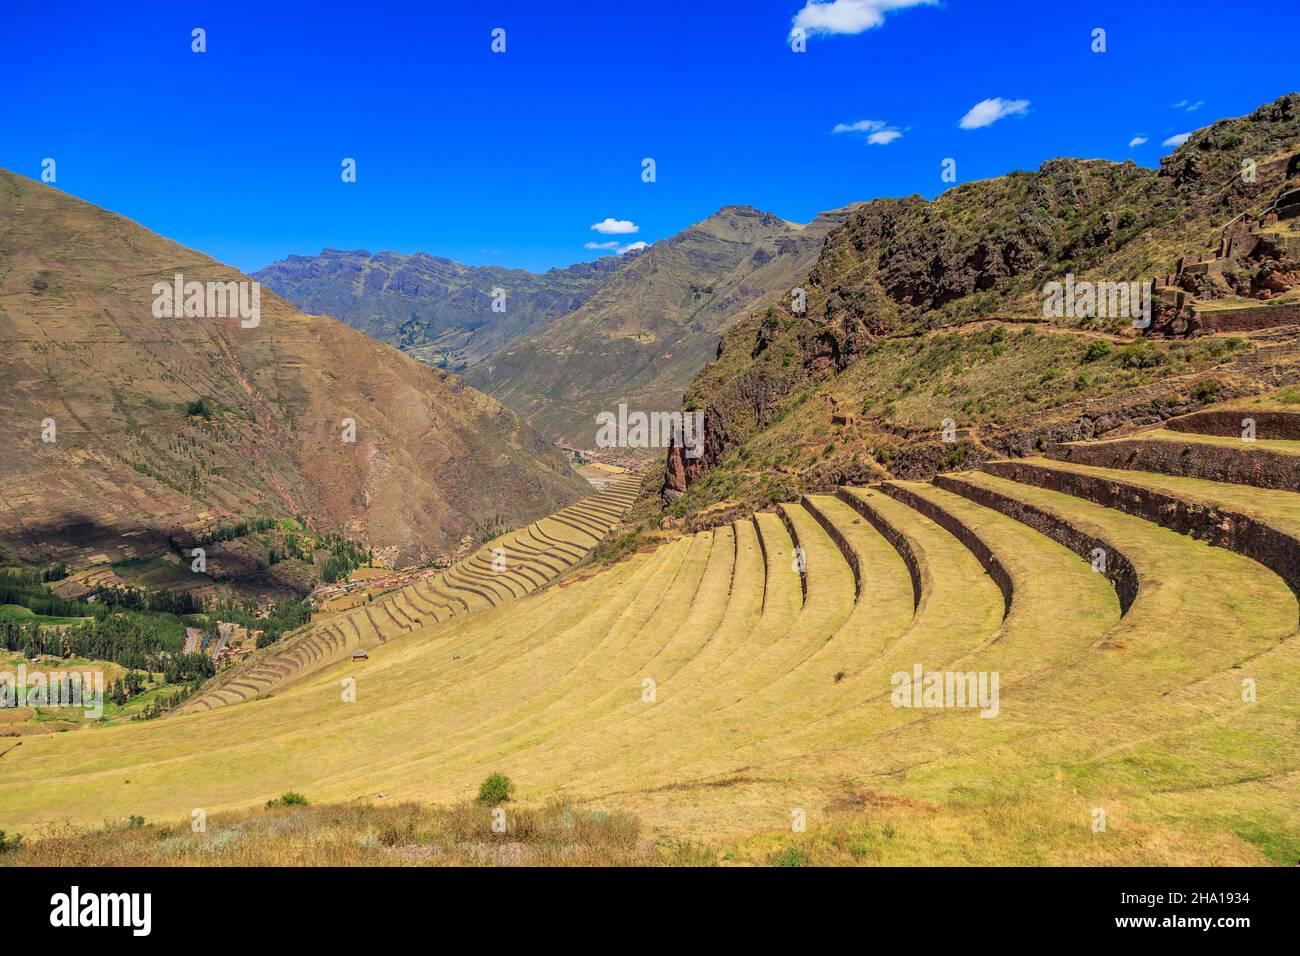 Antiguas terrazas agrícolas incas en la ladera de la montaña, Pisac, Perú Foto de stock